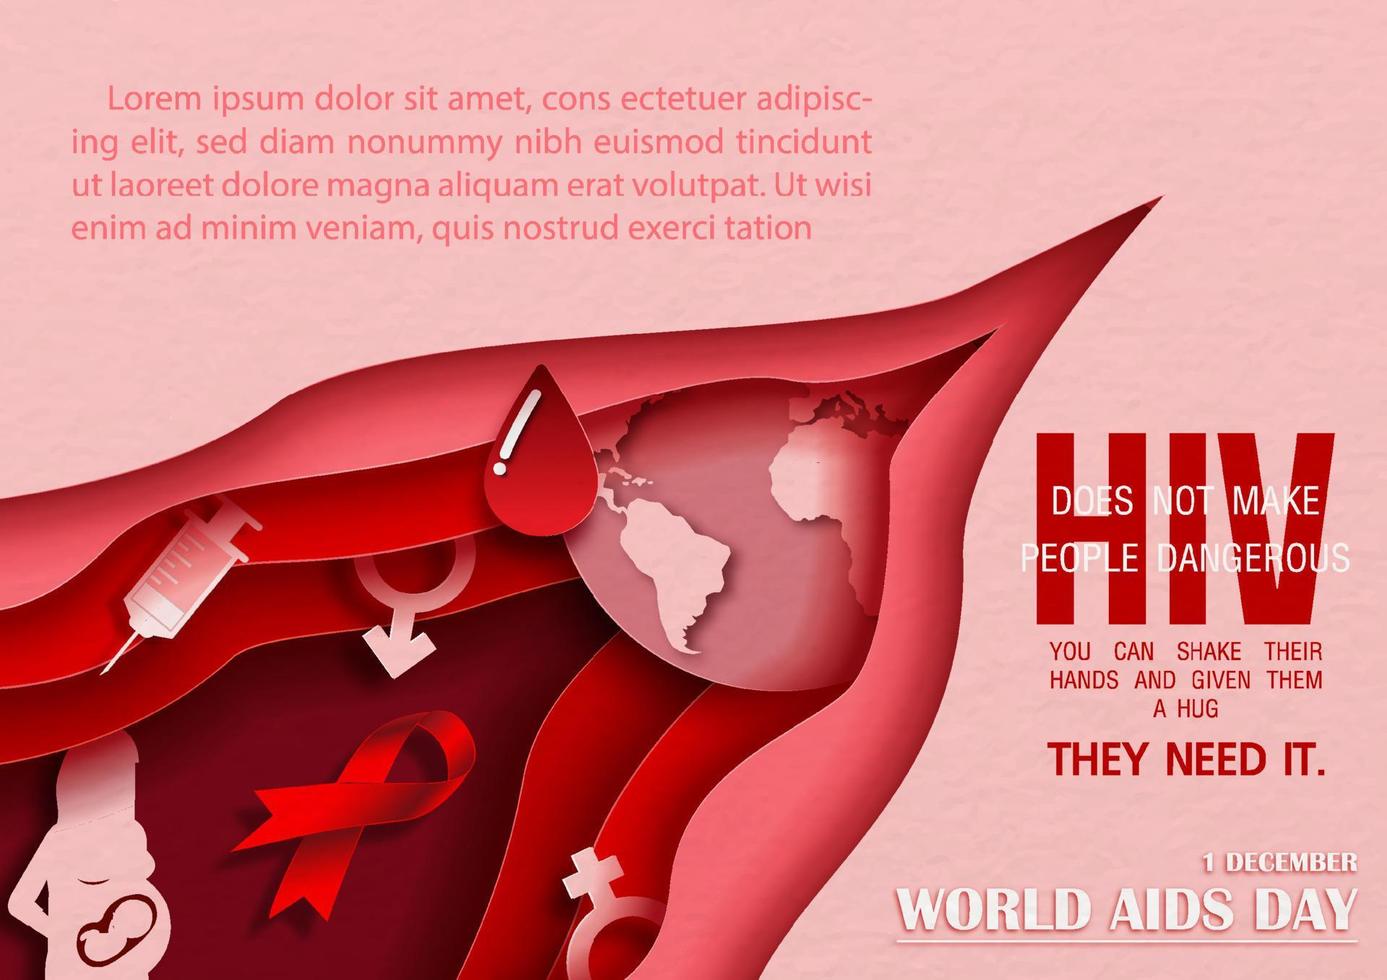 kampanj affisch av värld AIDS dag i lager papper skära stil och vektor design med exempel texter.